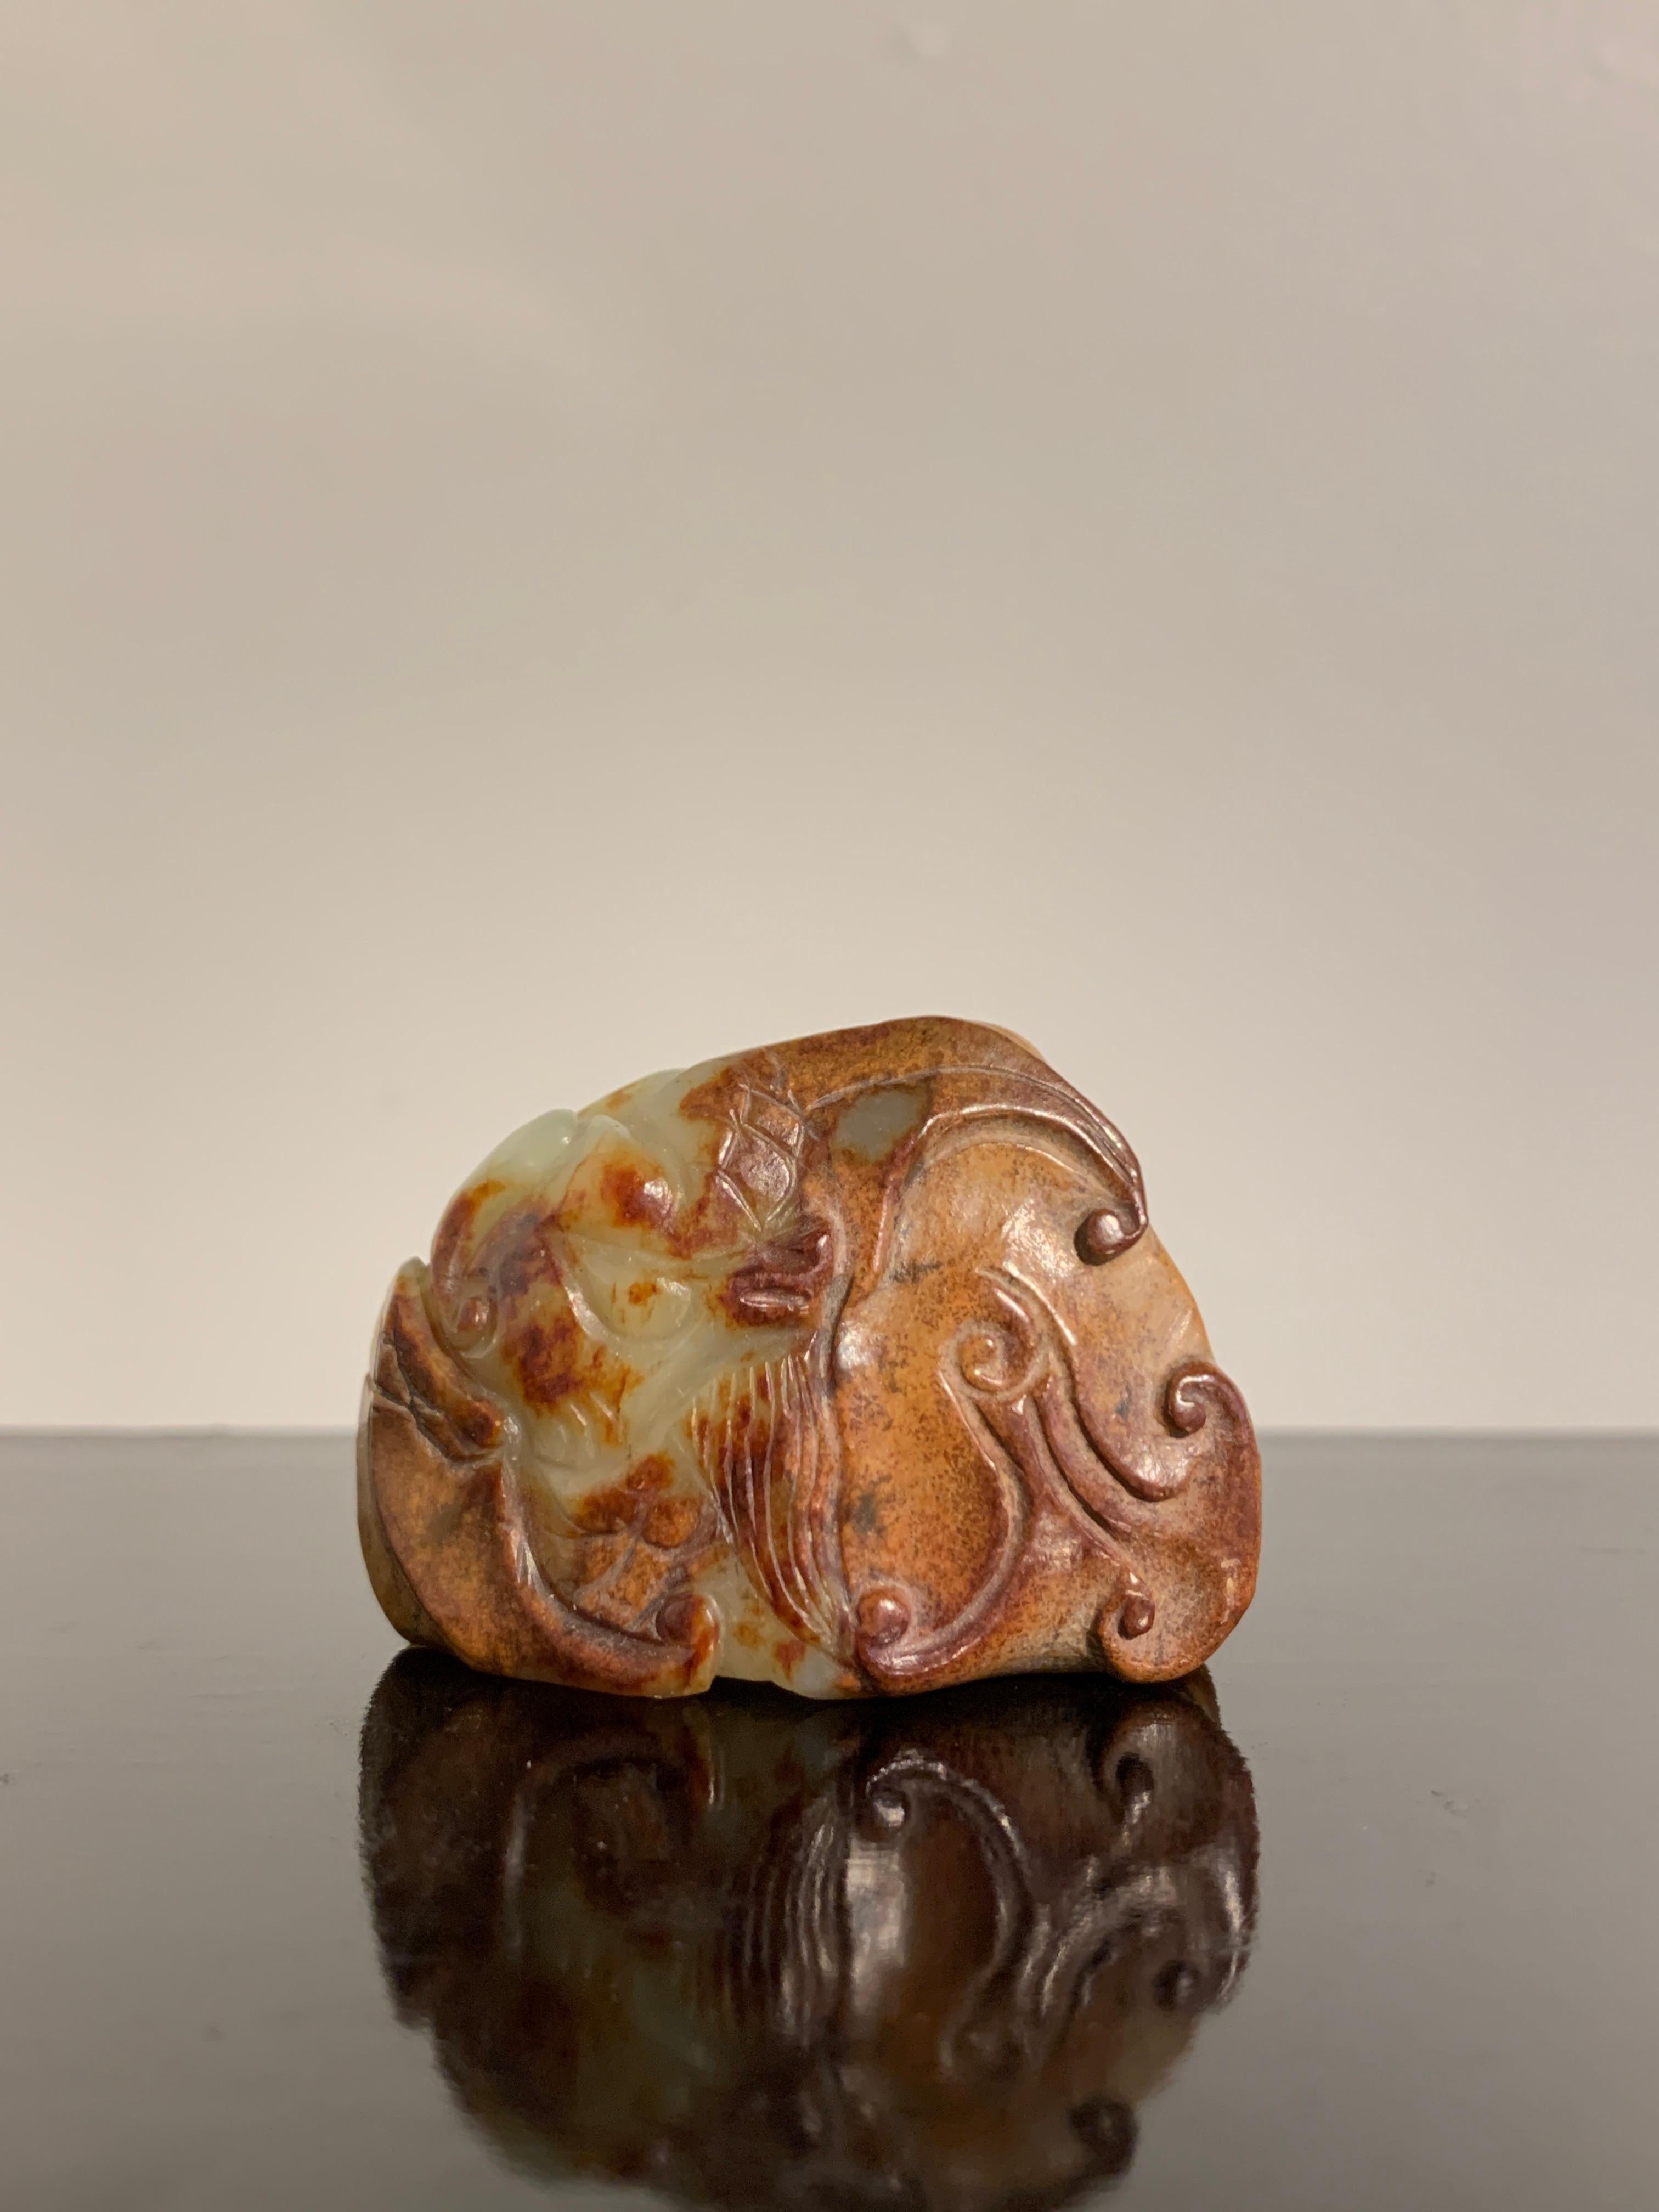 Superbe sculpture chinoise en jade néphrite jaune et roussâtre représentant une bête mythique, dynastie Ming (1368 à 1644) ou antérieure, Chine

La bête mythique est représentée avec des caractéristiques félines, notamment un corps musclé et